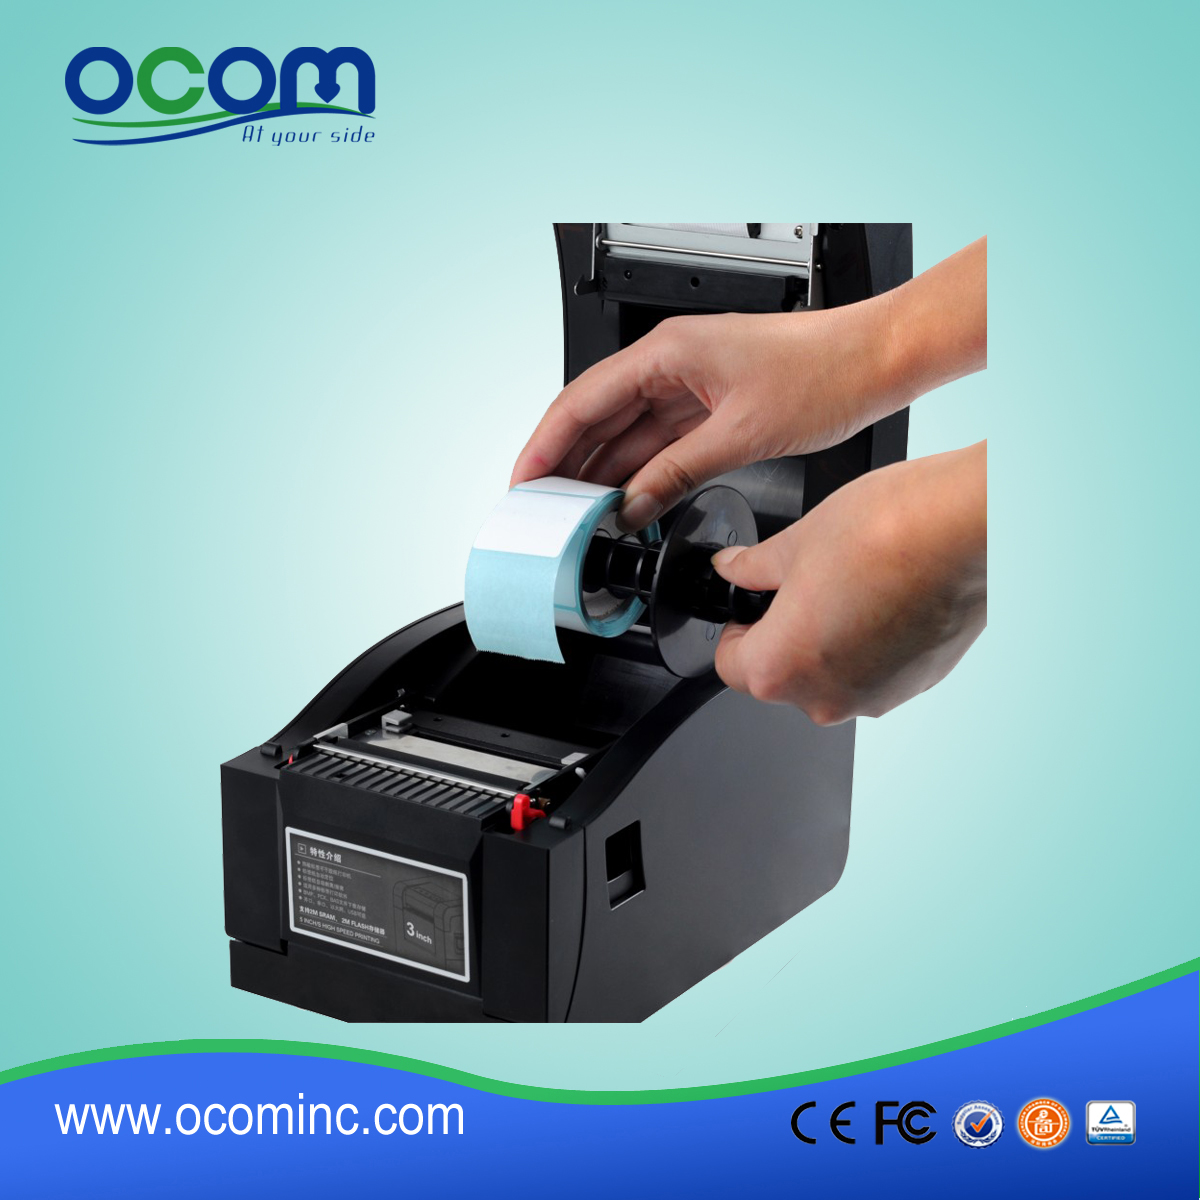 OCBP-005: Kostenwettbewerbs Airprint Thermodirekt Etikettendrucker